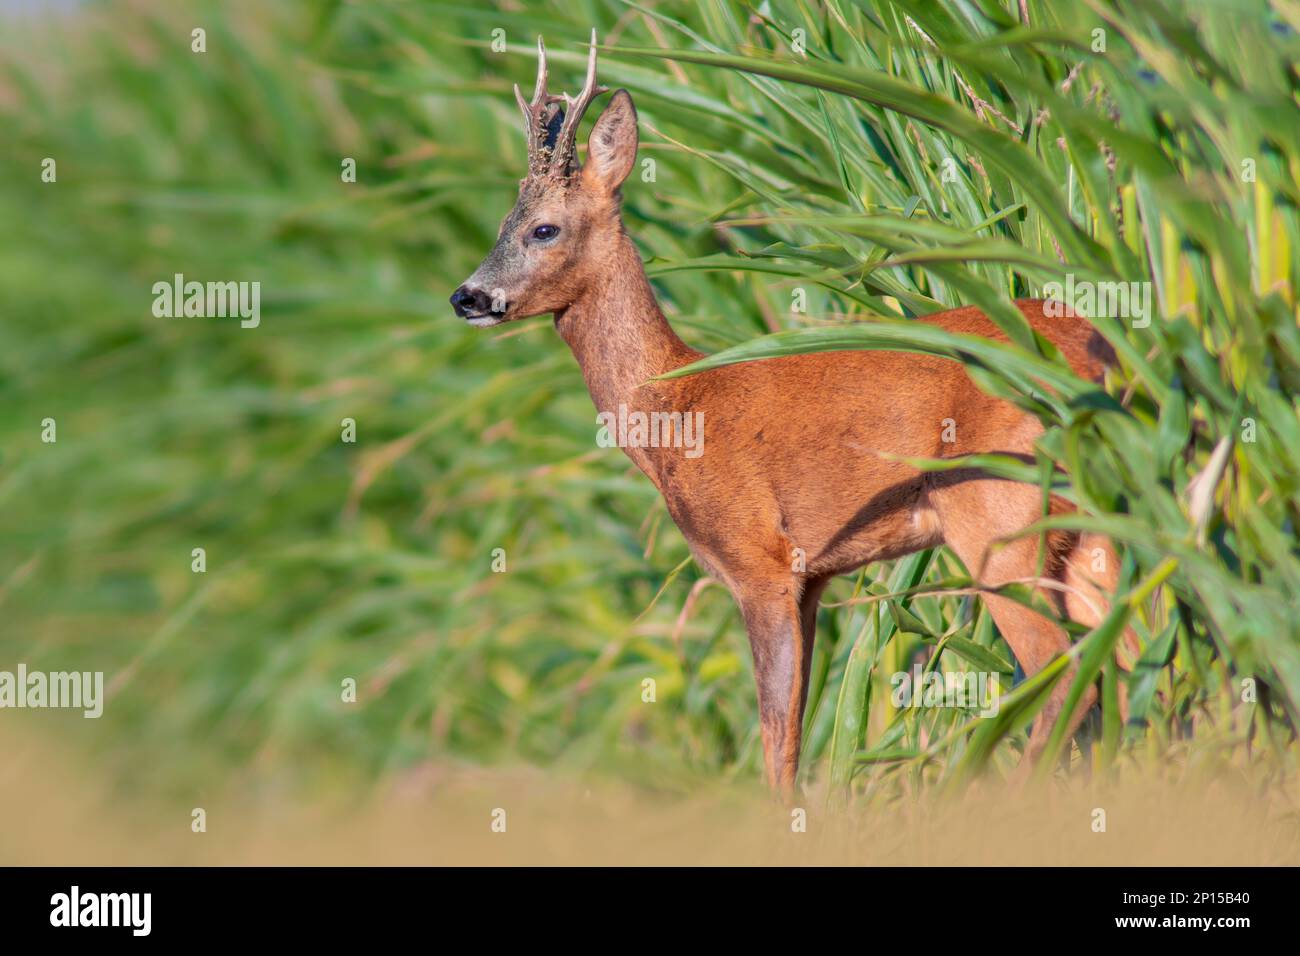 Ein junger Roebuck schaut im Sommer aus einem Maisfeld Stockfoto